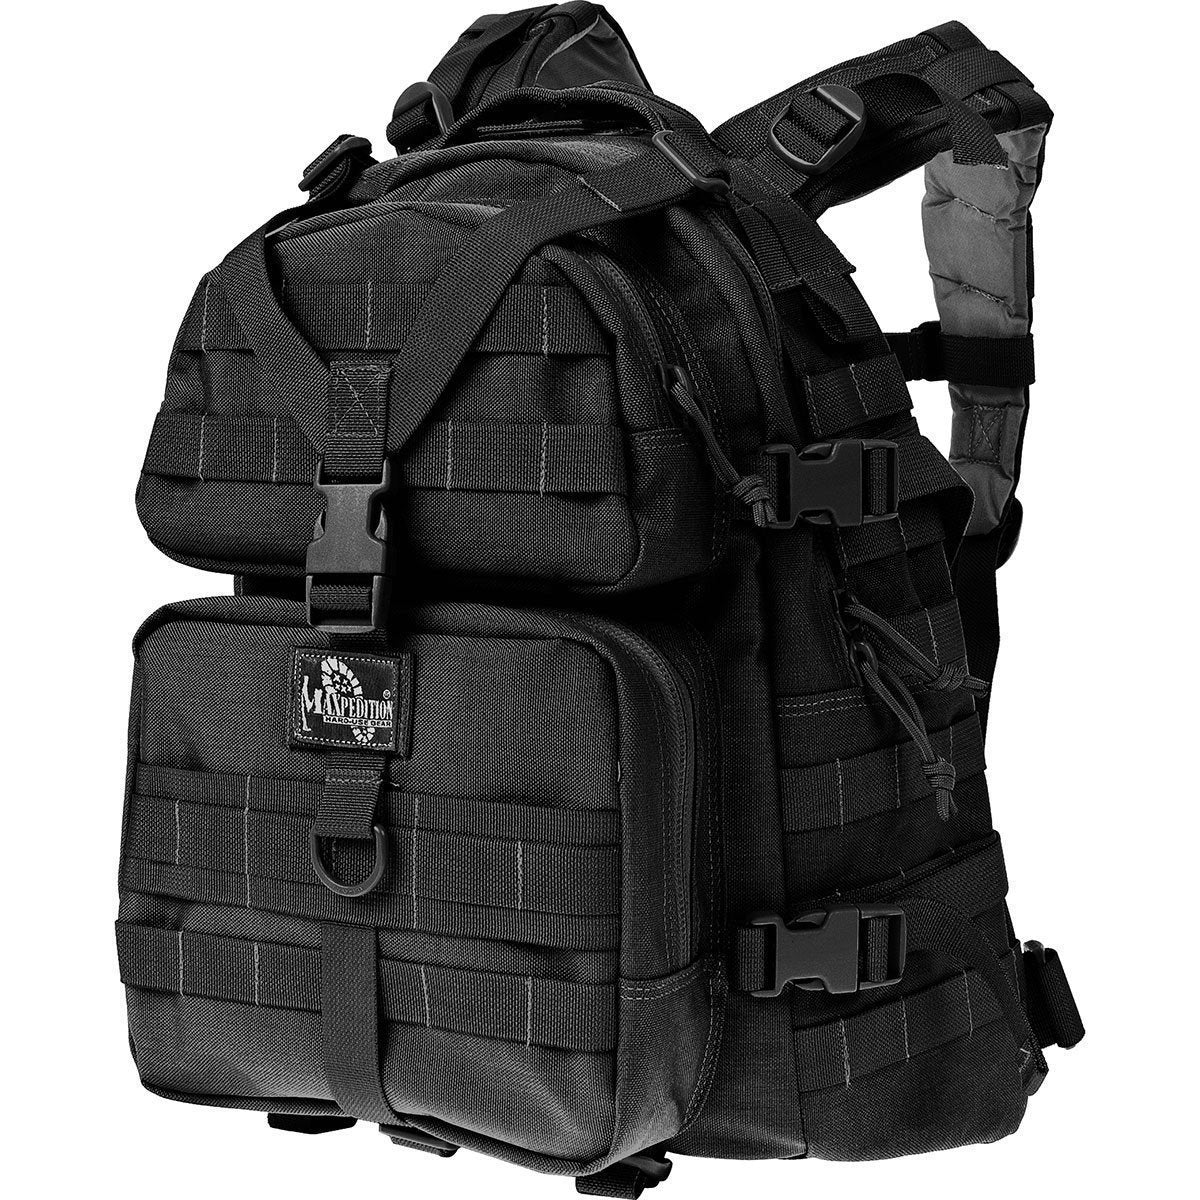 Maxpedition Condor-II Backpack Backpacks Maxpedition Black Tactical Gear Supplier Tactical Distributors Australia